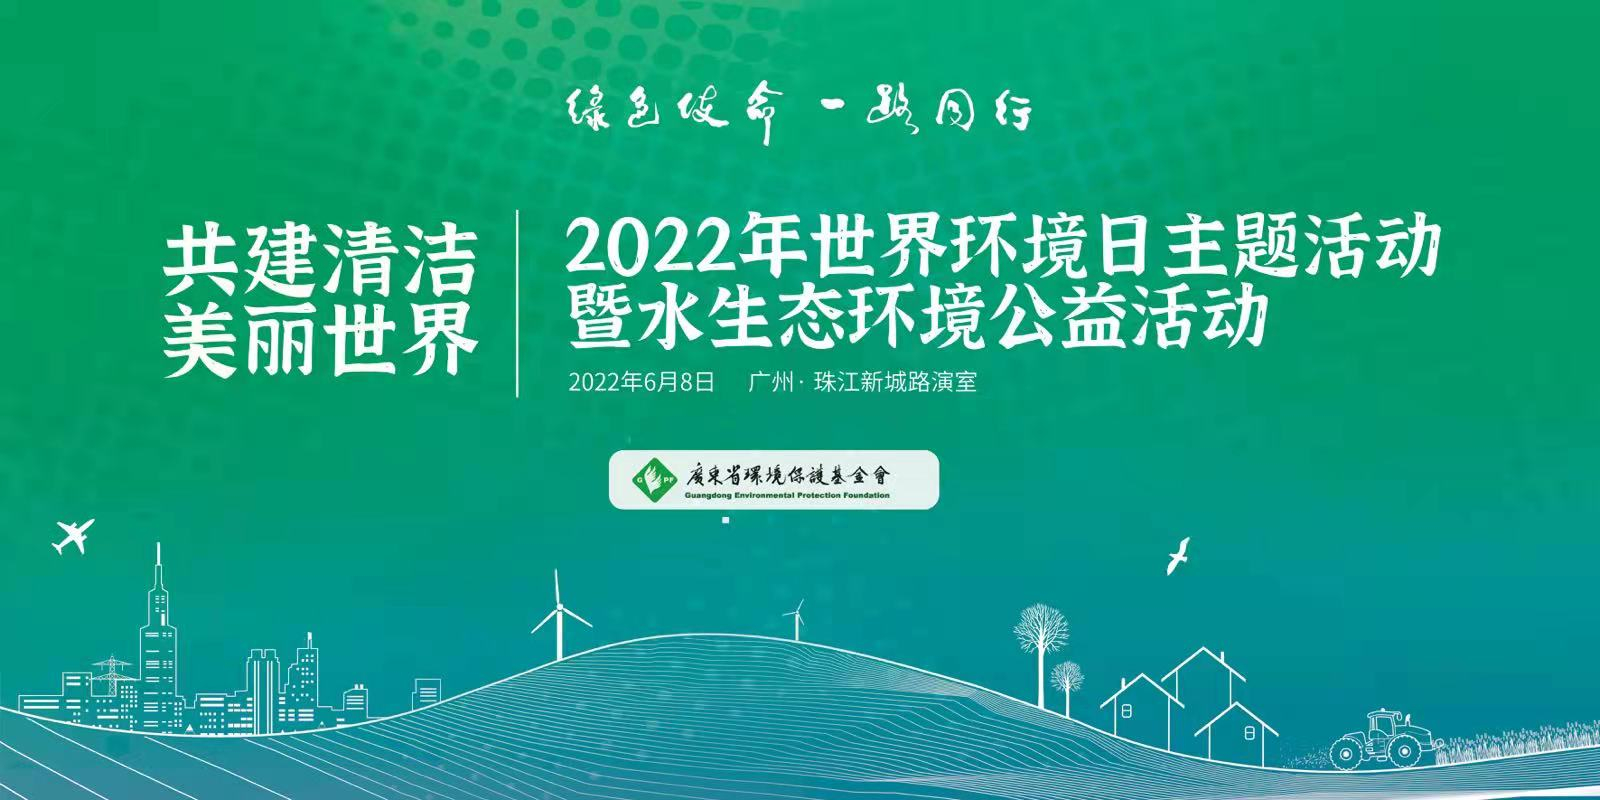 “共建清洁美丽世界”——广东省环保基金会2022年世界环境日主题活动暨水生态环境公益活动启动仪式圆满举行